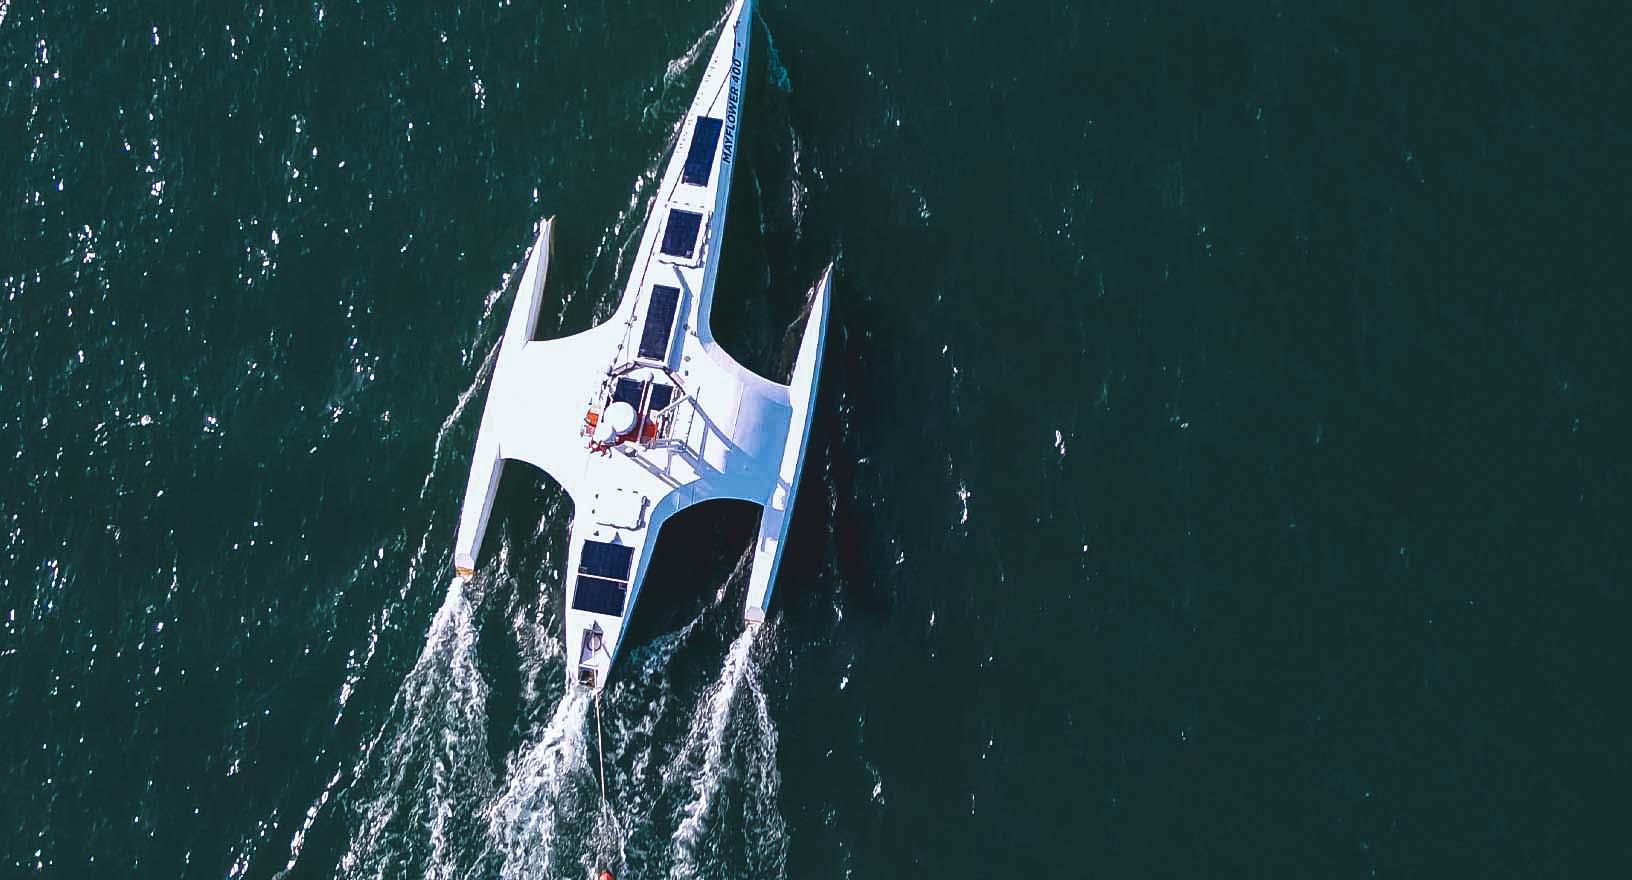 Le navire autonome Mayflower navigue de manière autonome à travers les eaux vertes de l’océan, équipé de technologies permettant une autonomie garantie